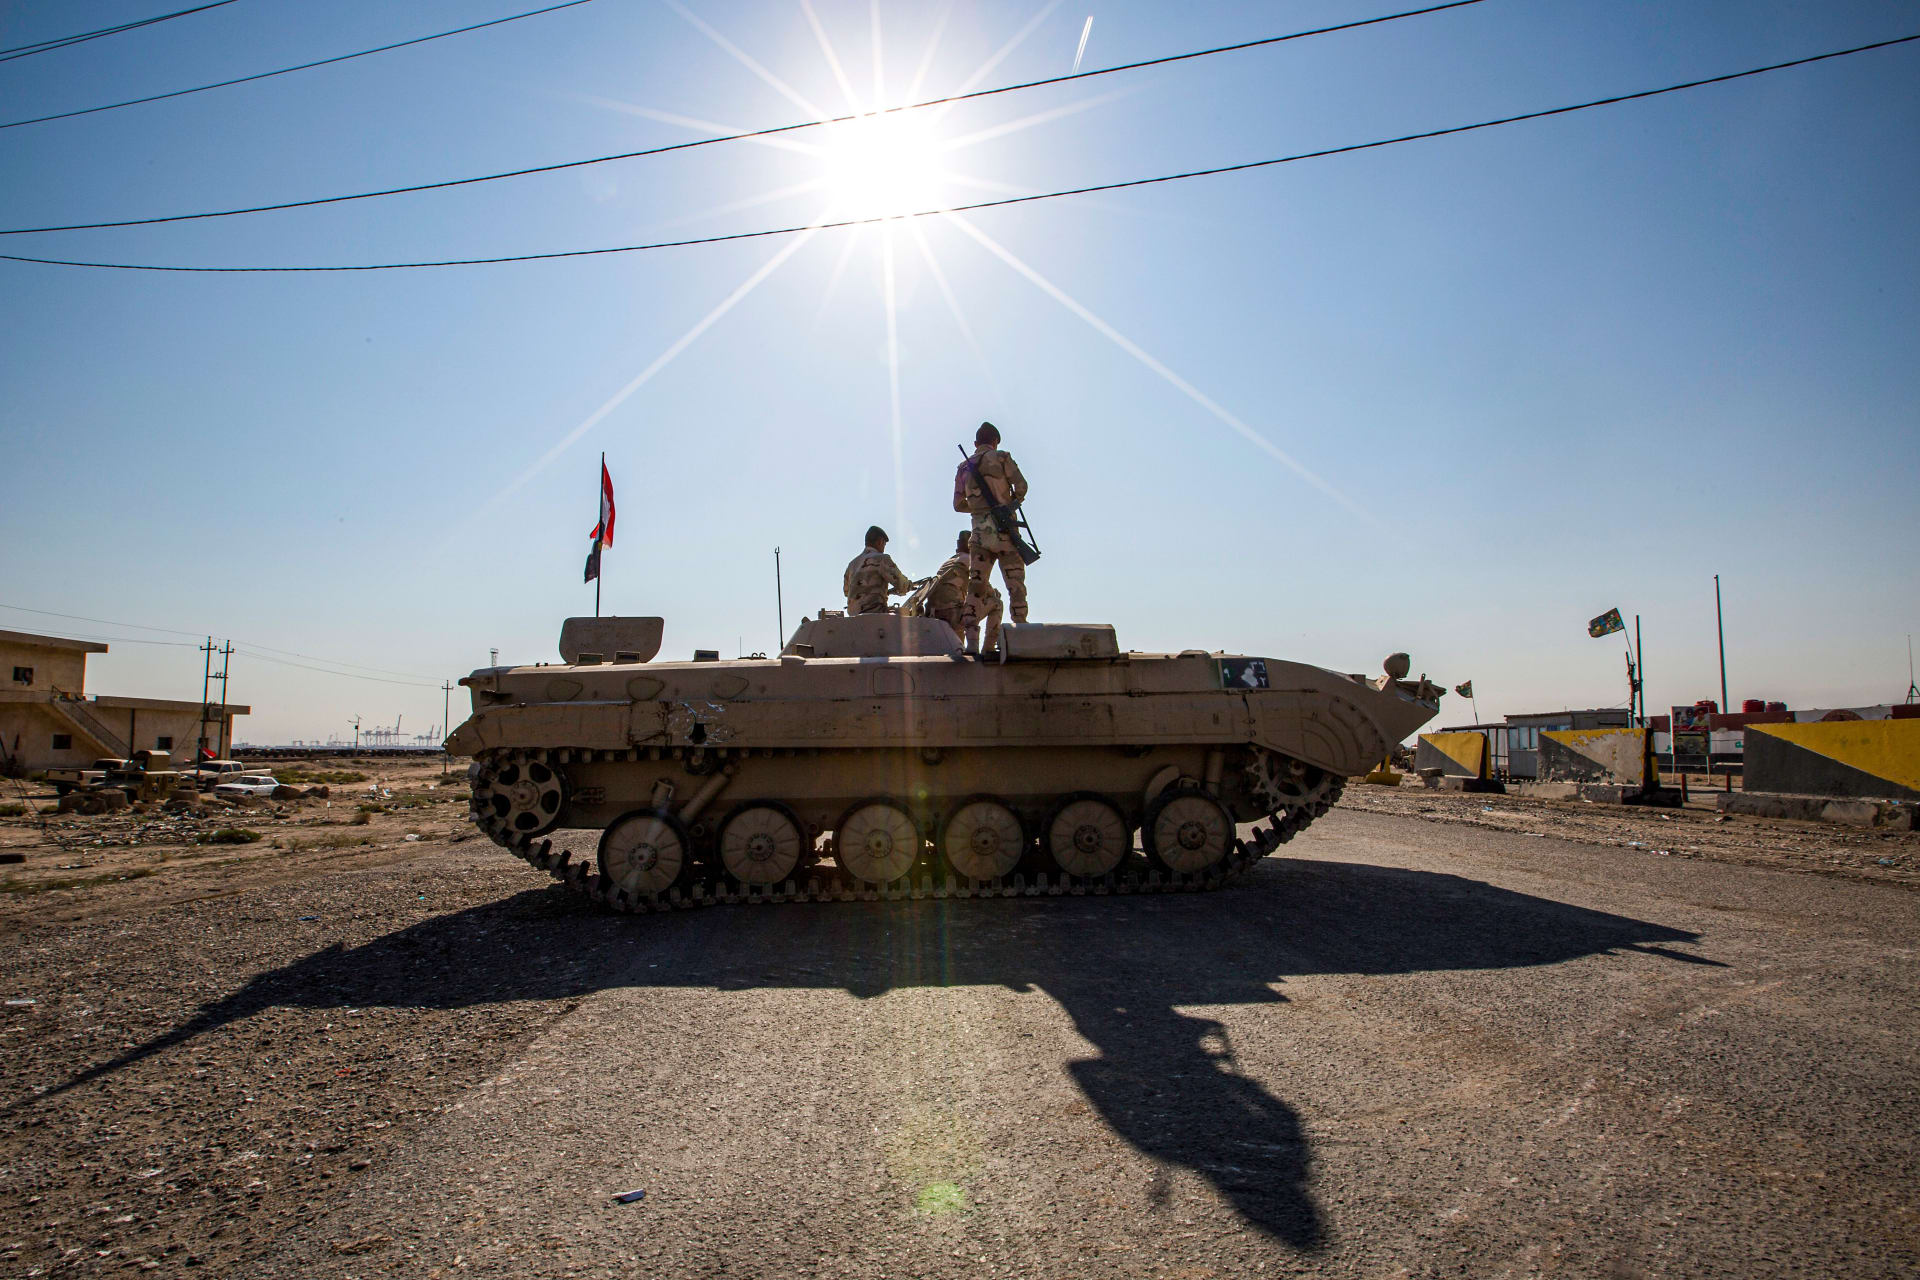 الجيش العراقي يكشف آلية خروج القوات الأجنبية من البلاد بعد "الانحراف الأخير"